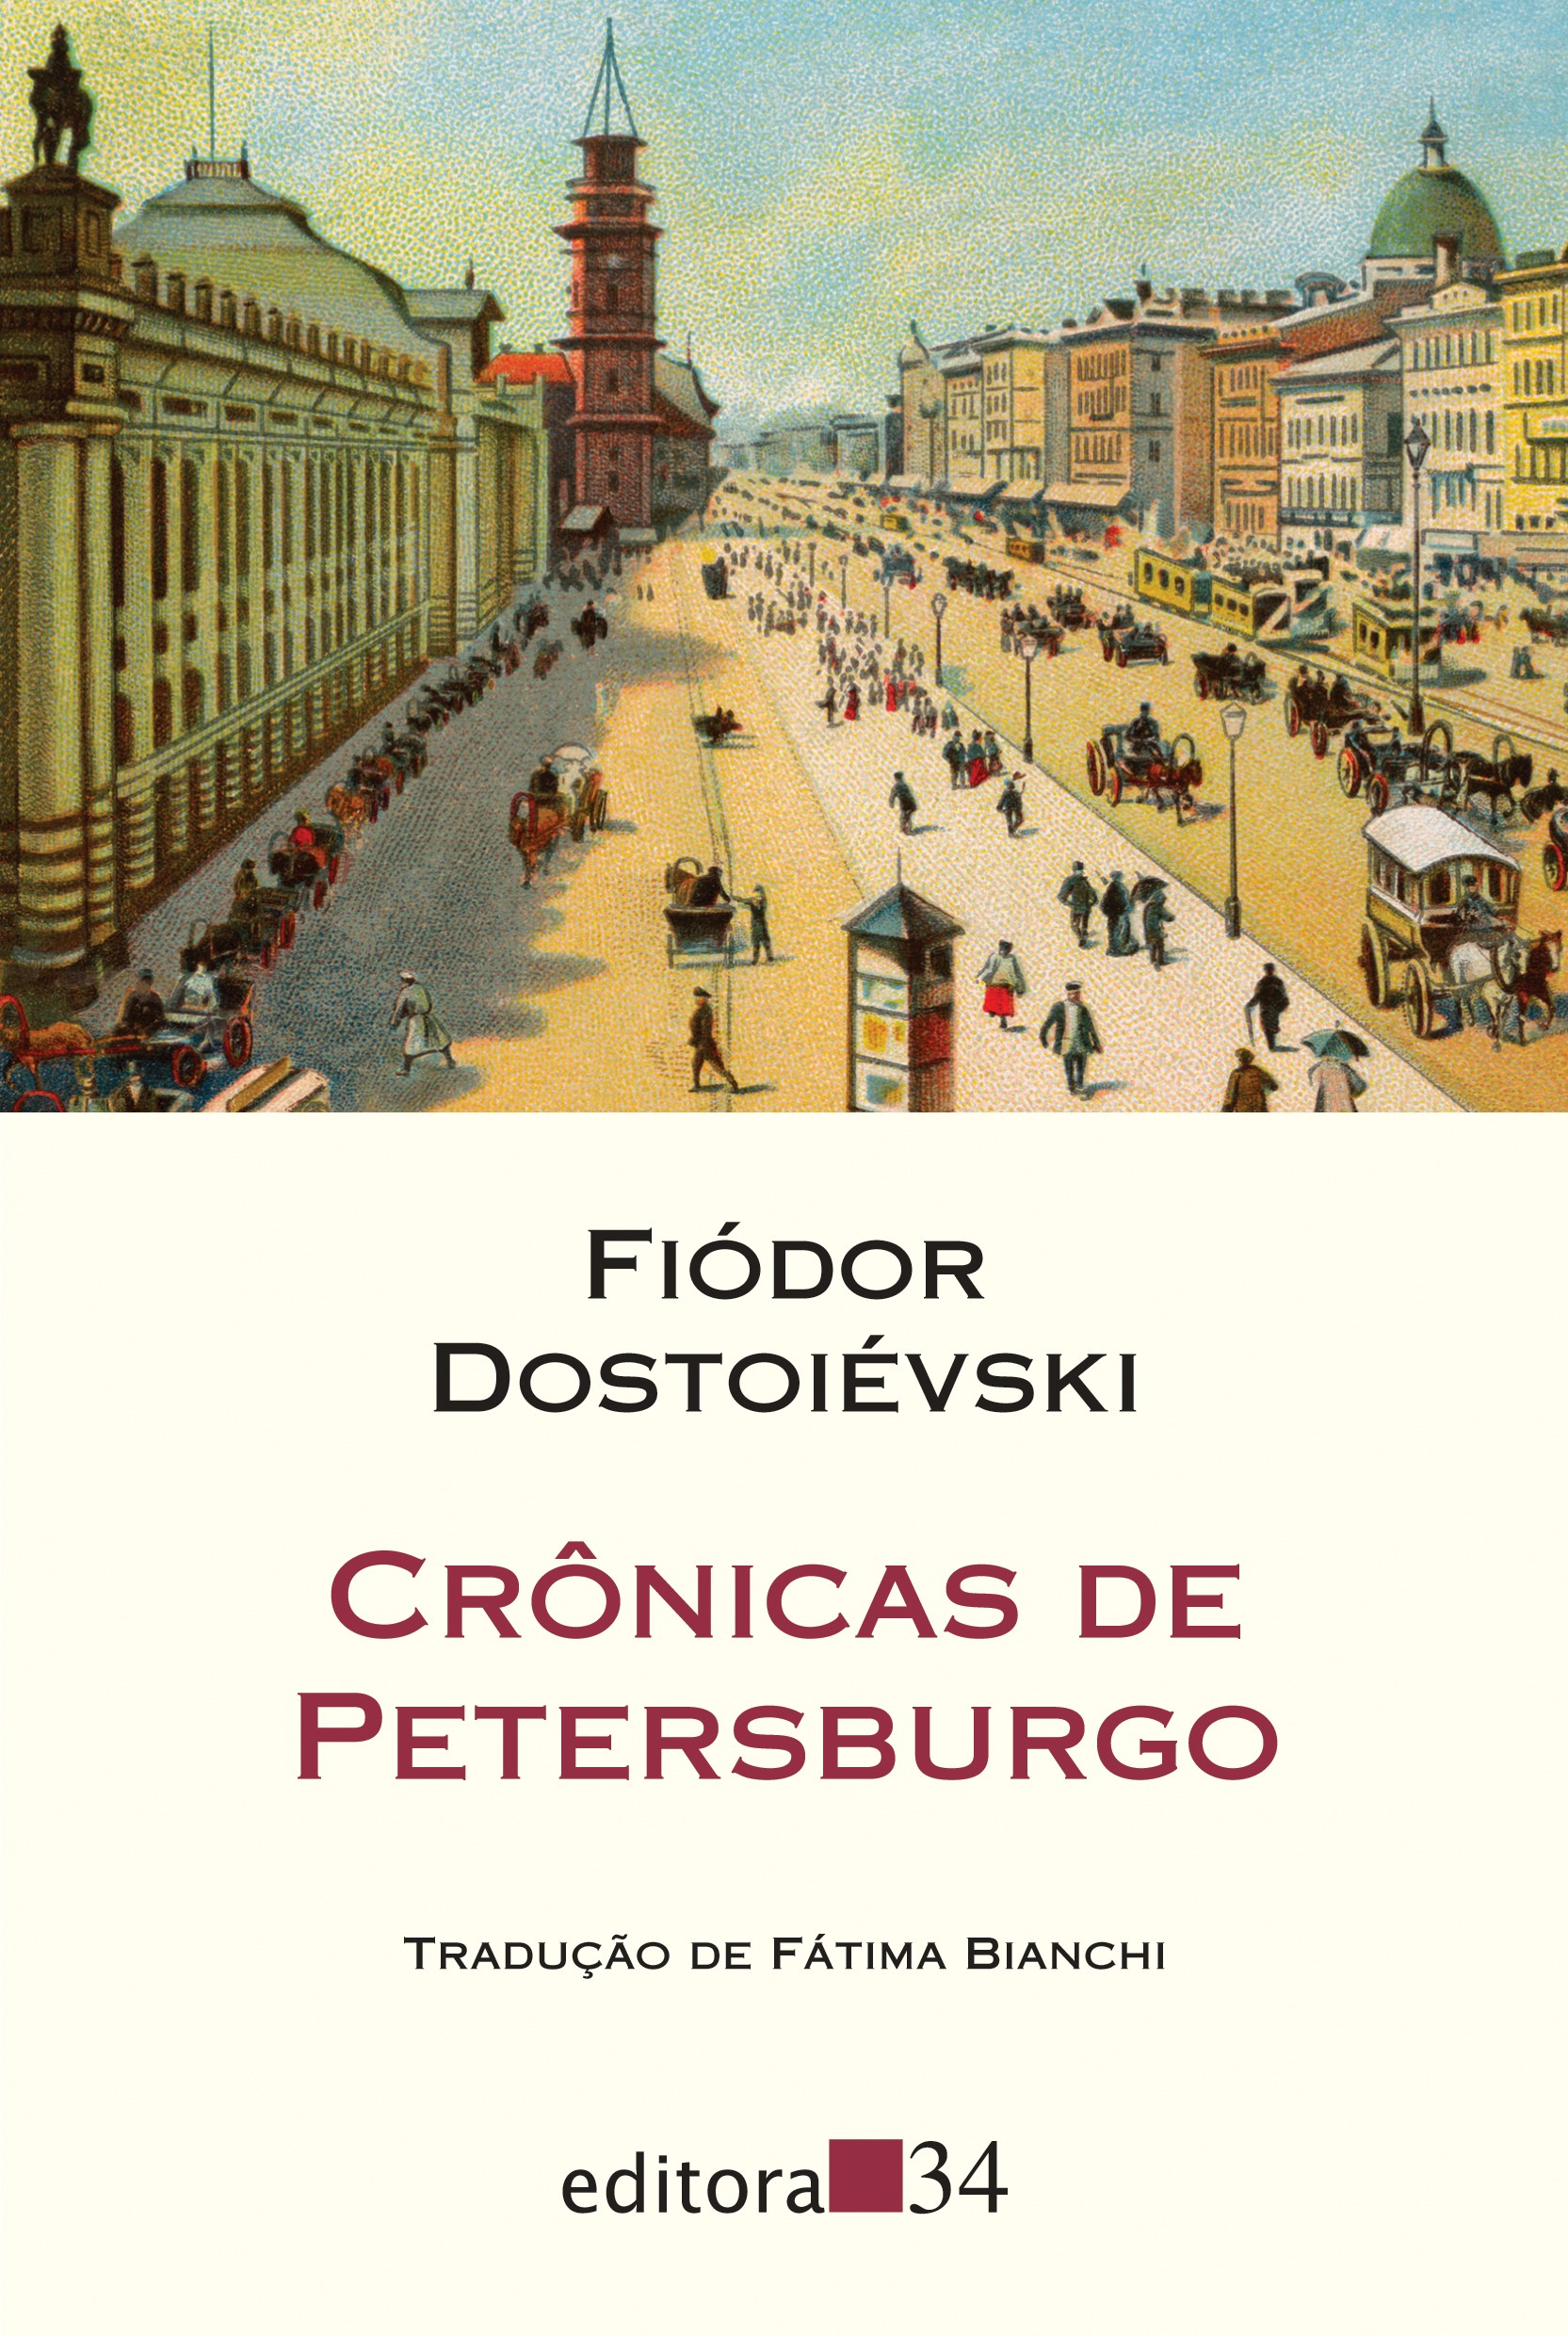 Crônicas de Petersburgo, de Fiódor Dostoiévski (Editora 34, 96 páginas, R$ 42) (Foto: Divulgação)